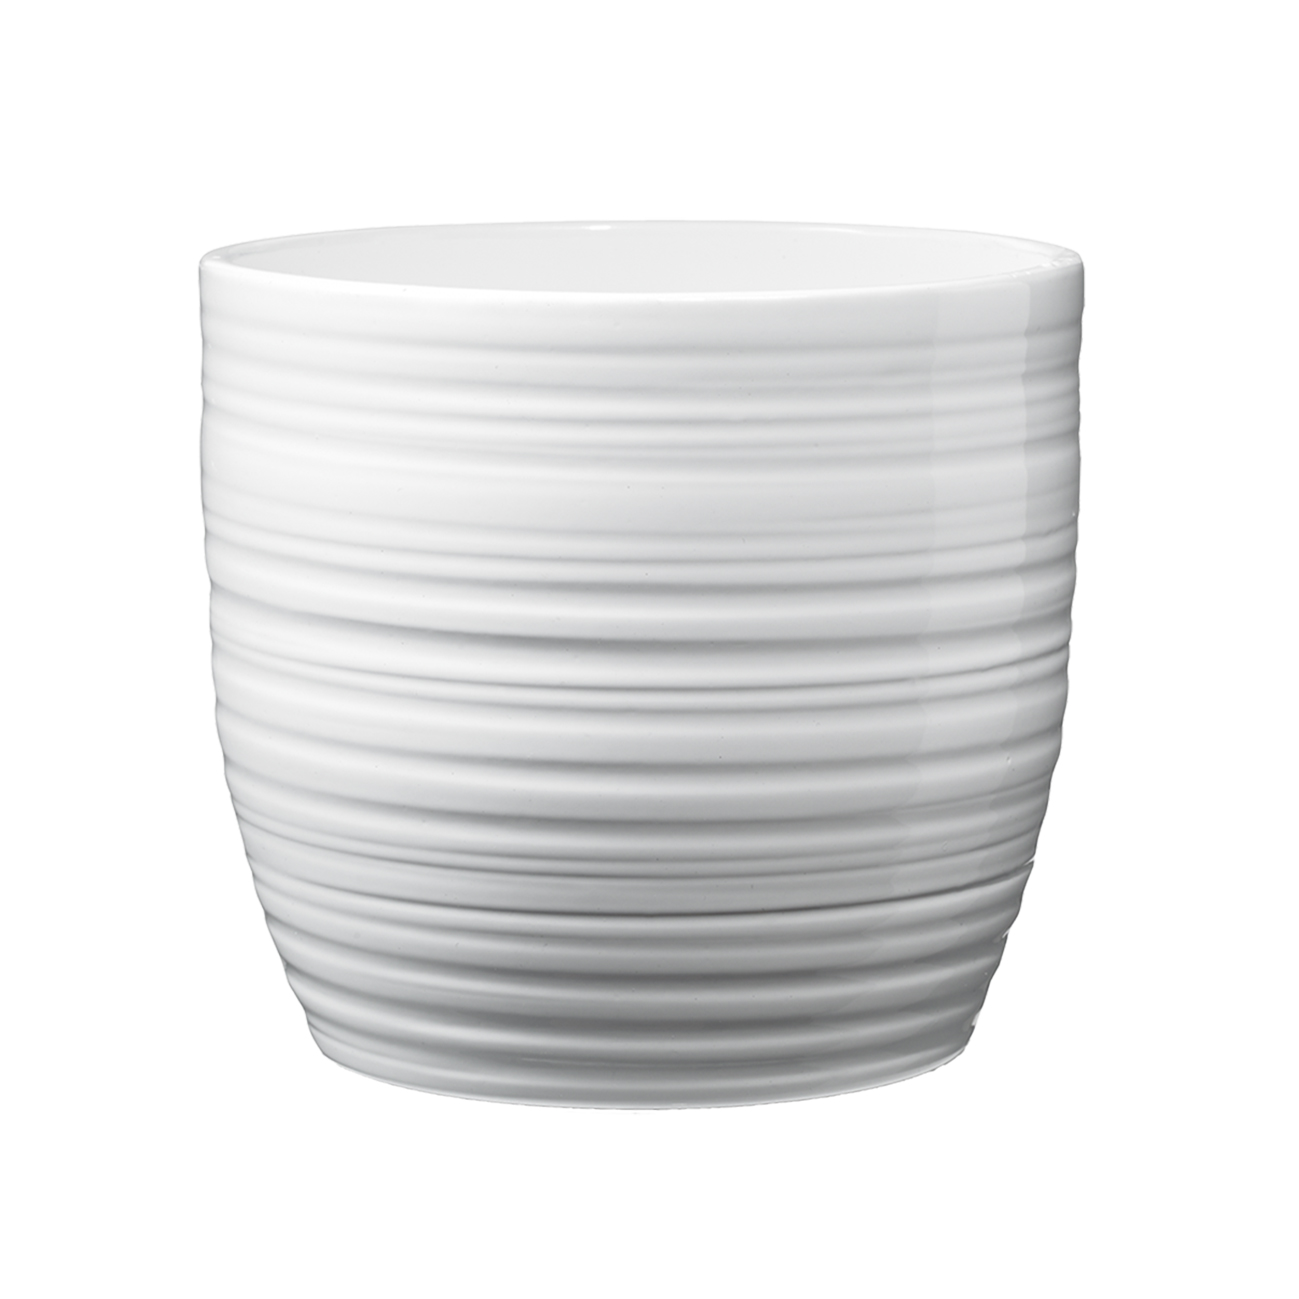 Ghiveci SK Bergamo Pure, ceramica, alb lucios, diametru 21 cm, 20 cm alb